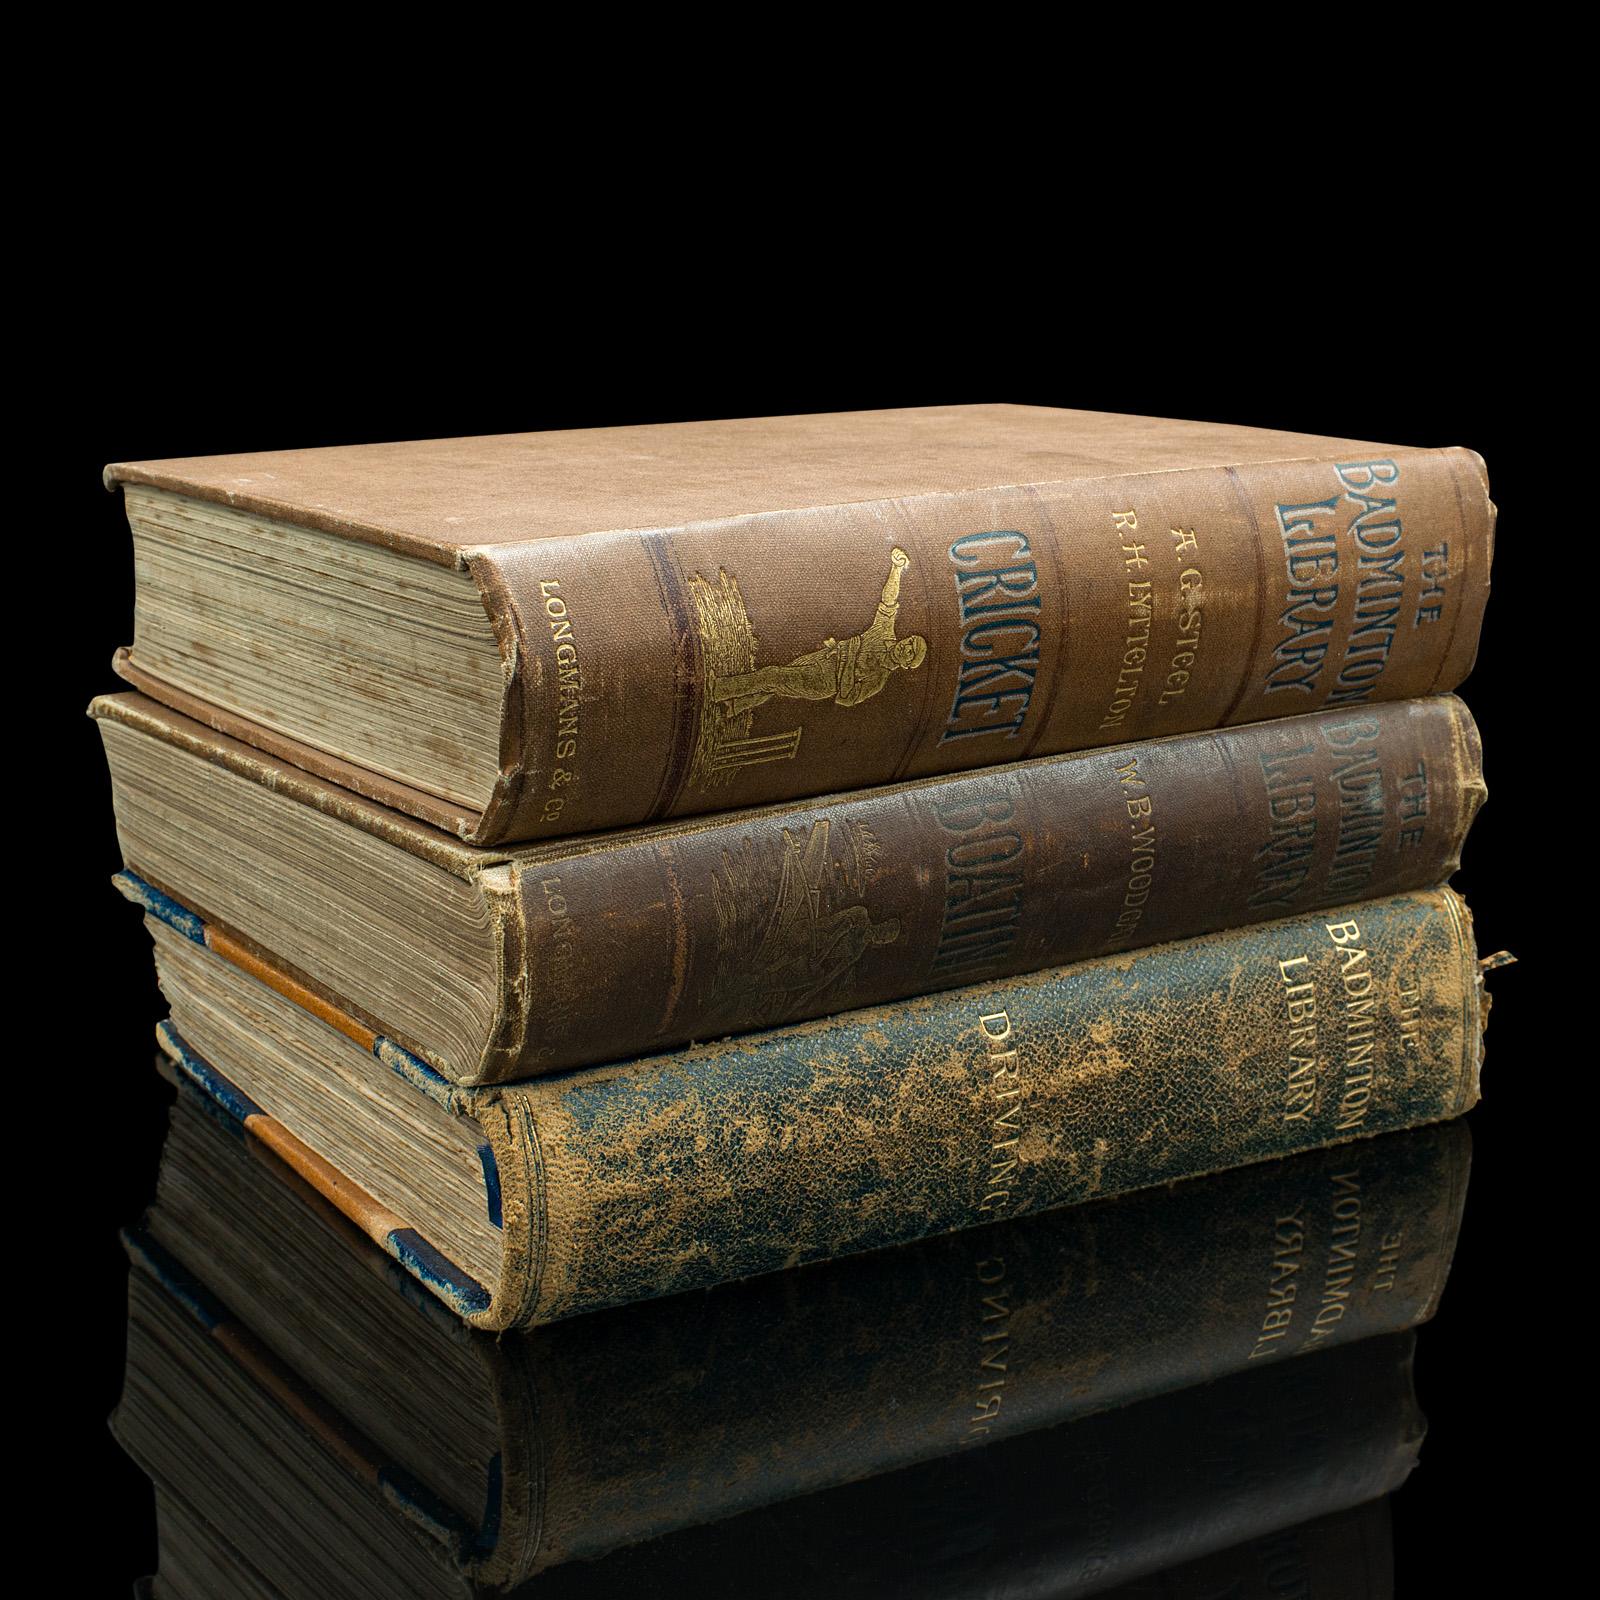 Dies ist ein Satz von 3 antiken Badminton Bibliothek Bücher. Ein englischsprachiges, gebundenes Nachschlagewerk zu sportlichen Themen aus der späten viktorianischen Zeit, etwa 1890.

Die dem Prinzen von Wales (später Edward VII.) gewidmete Badminton